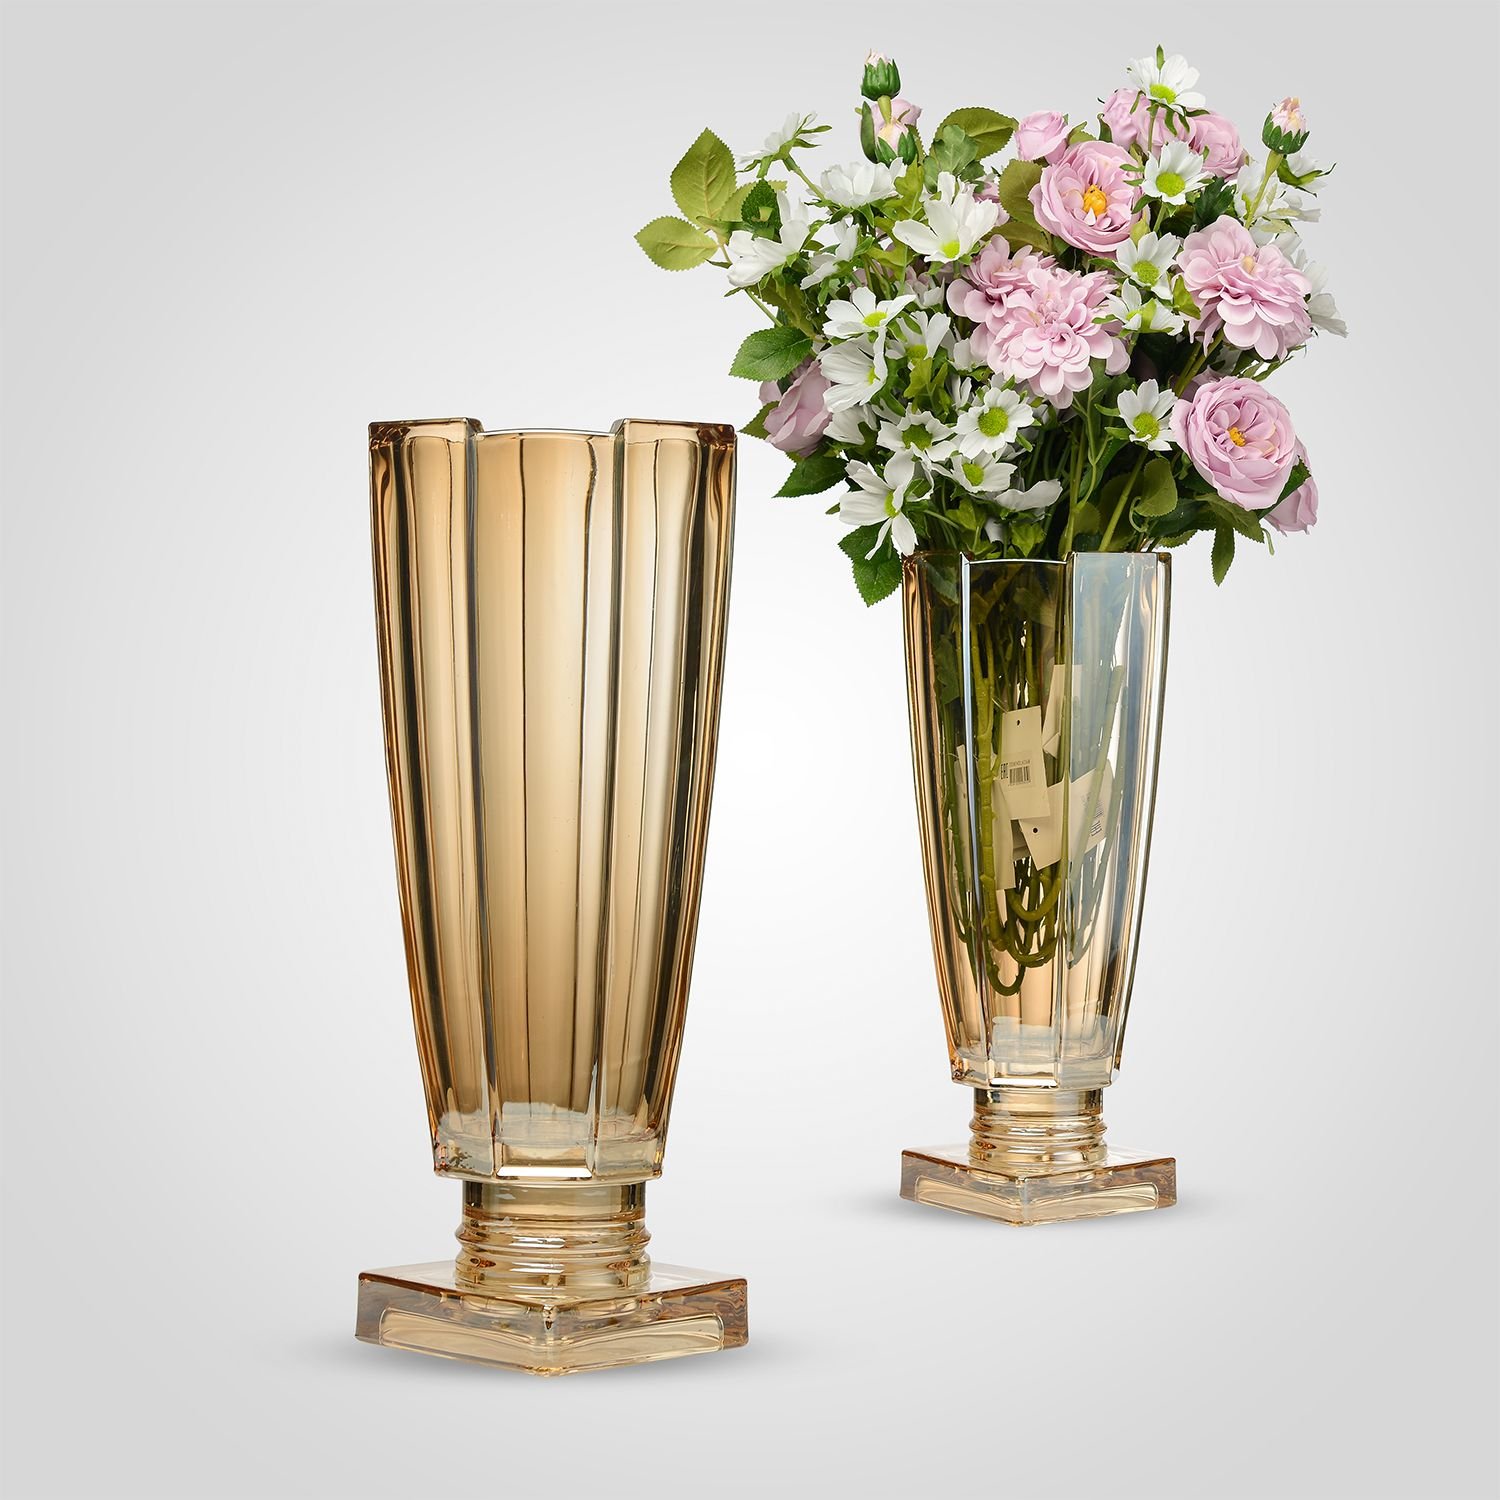 Ваза для больших букетов. Ваза напольная 60см кер 110621. Вазы для цветов. Интерьерные вазы. Стильная ваза для цветов.